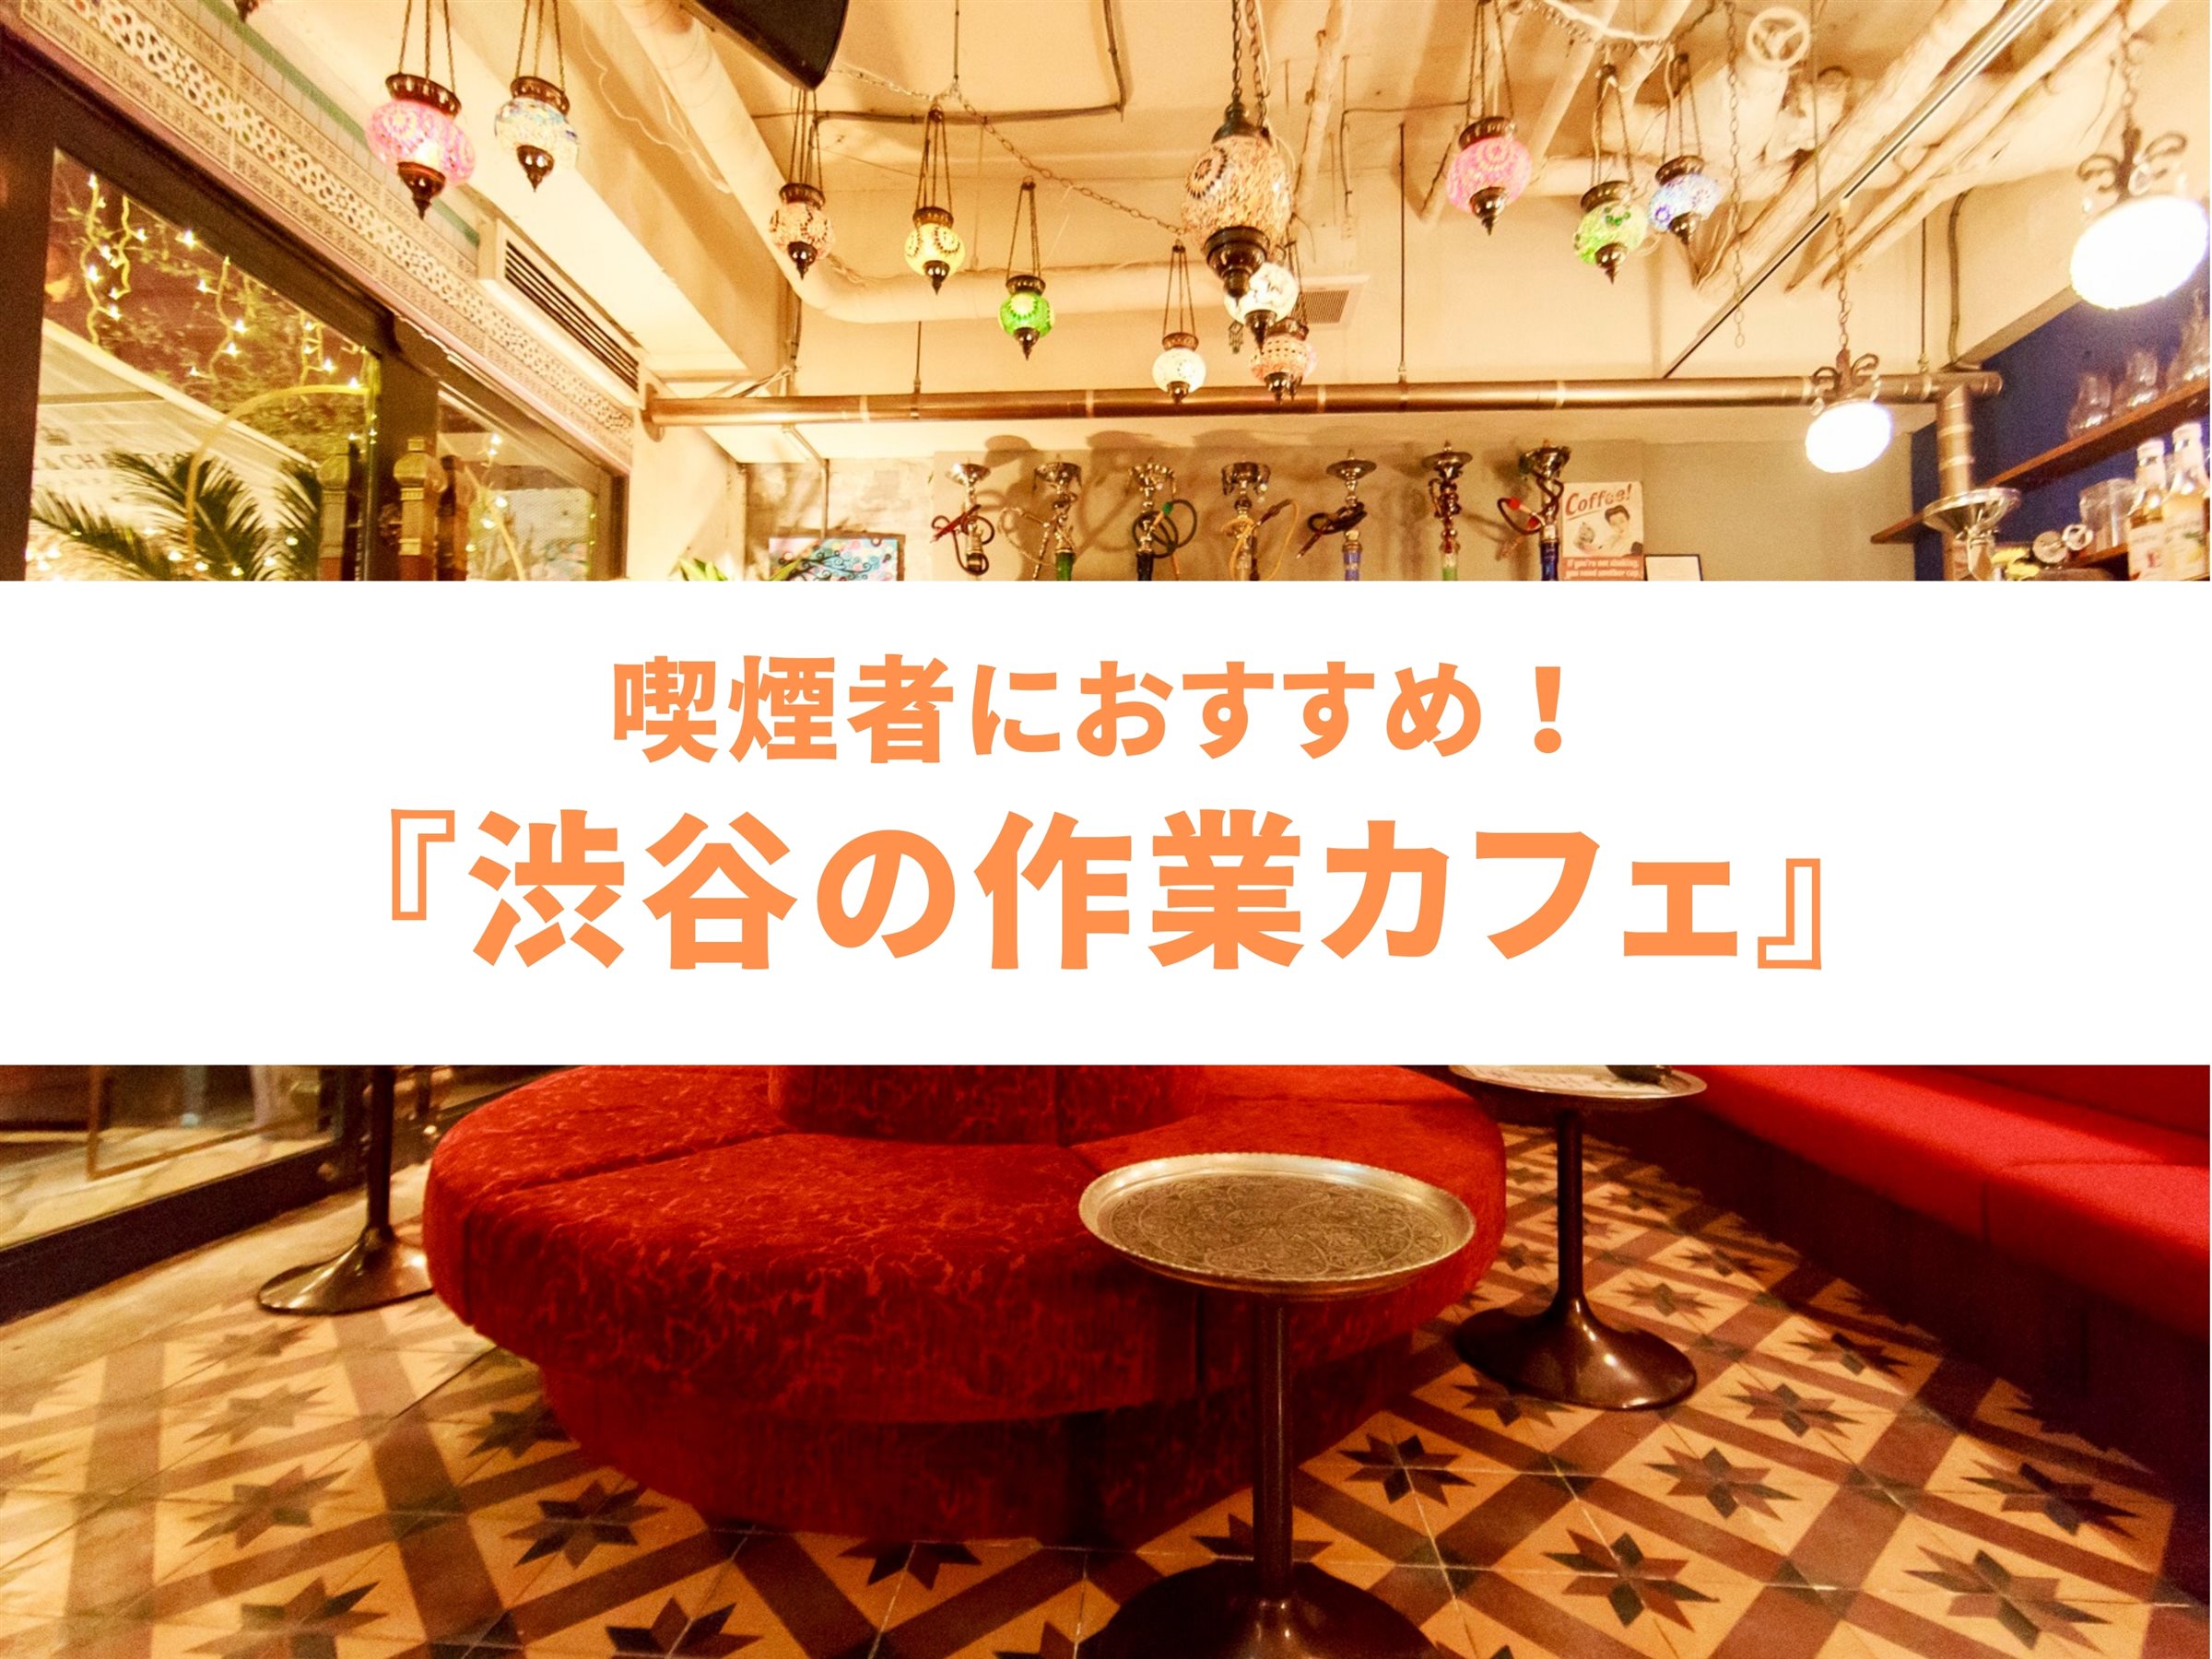 【渋谷】喫煙者さんの長時間作業向けカフェにおすすめ『Cafe BOHEMIA』